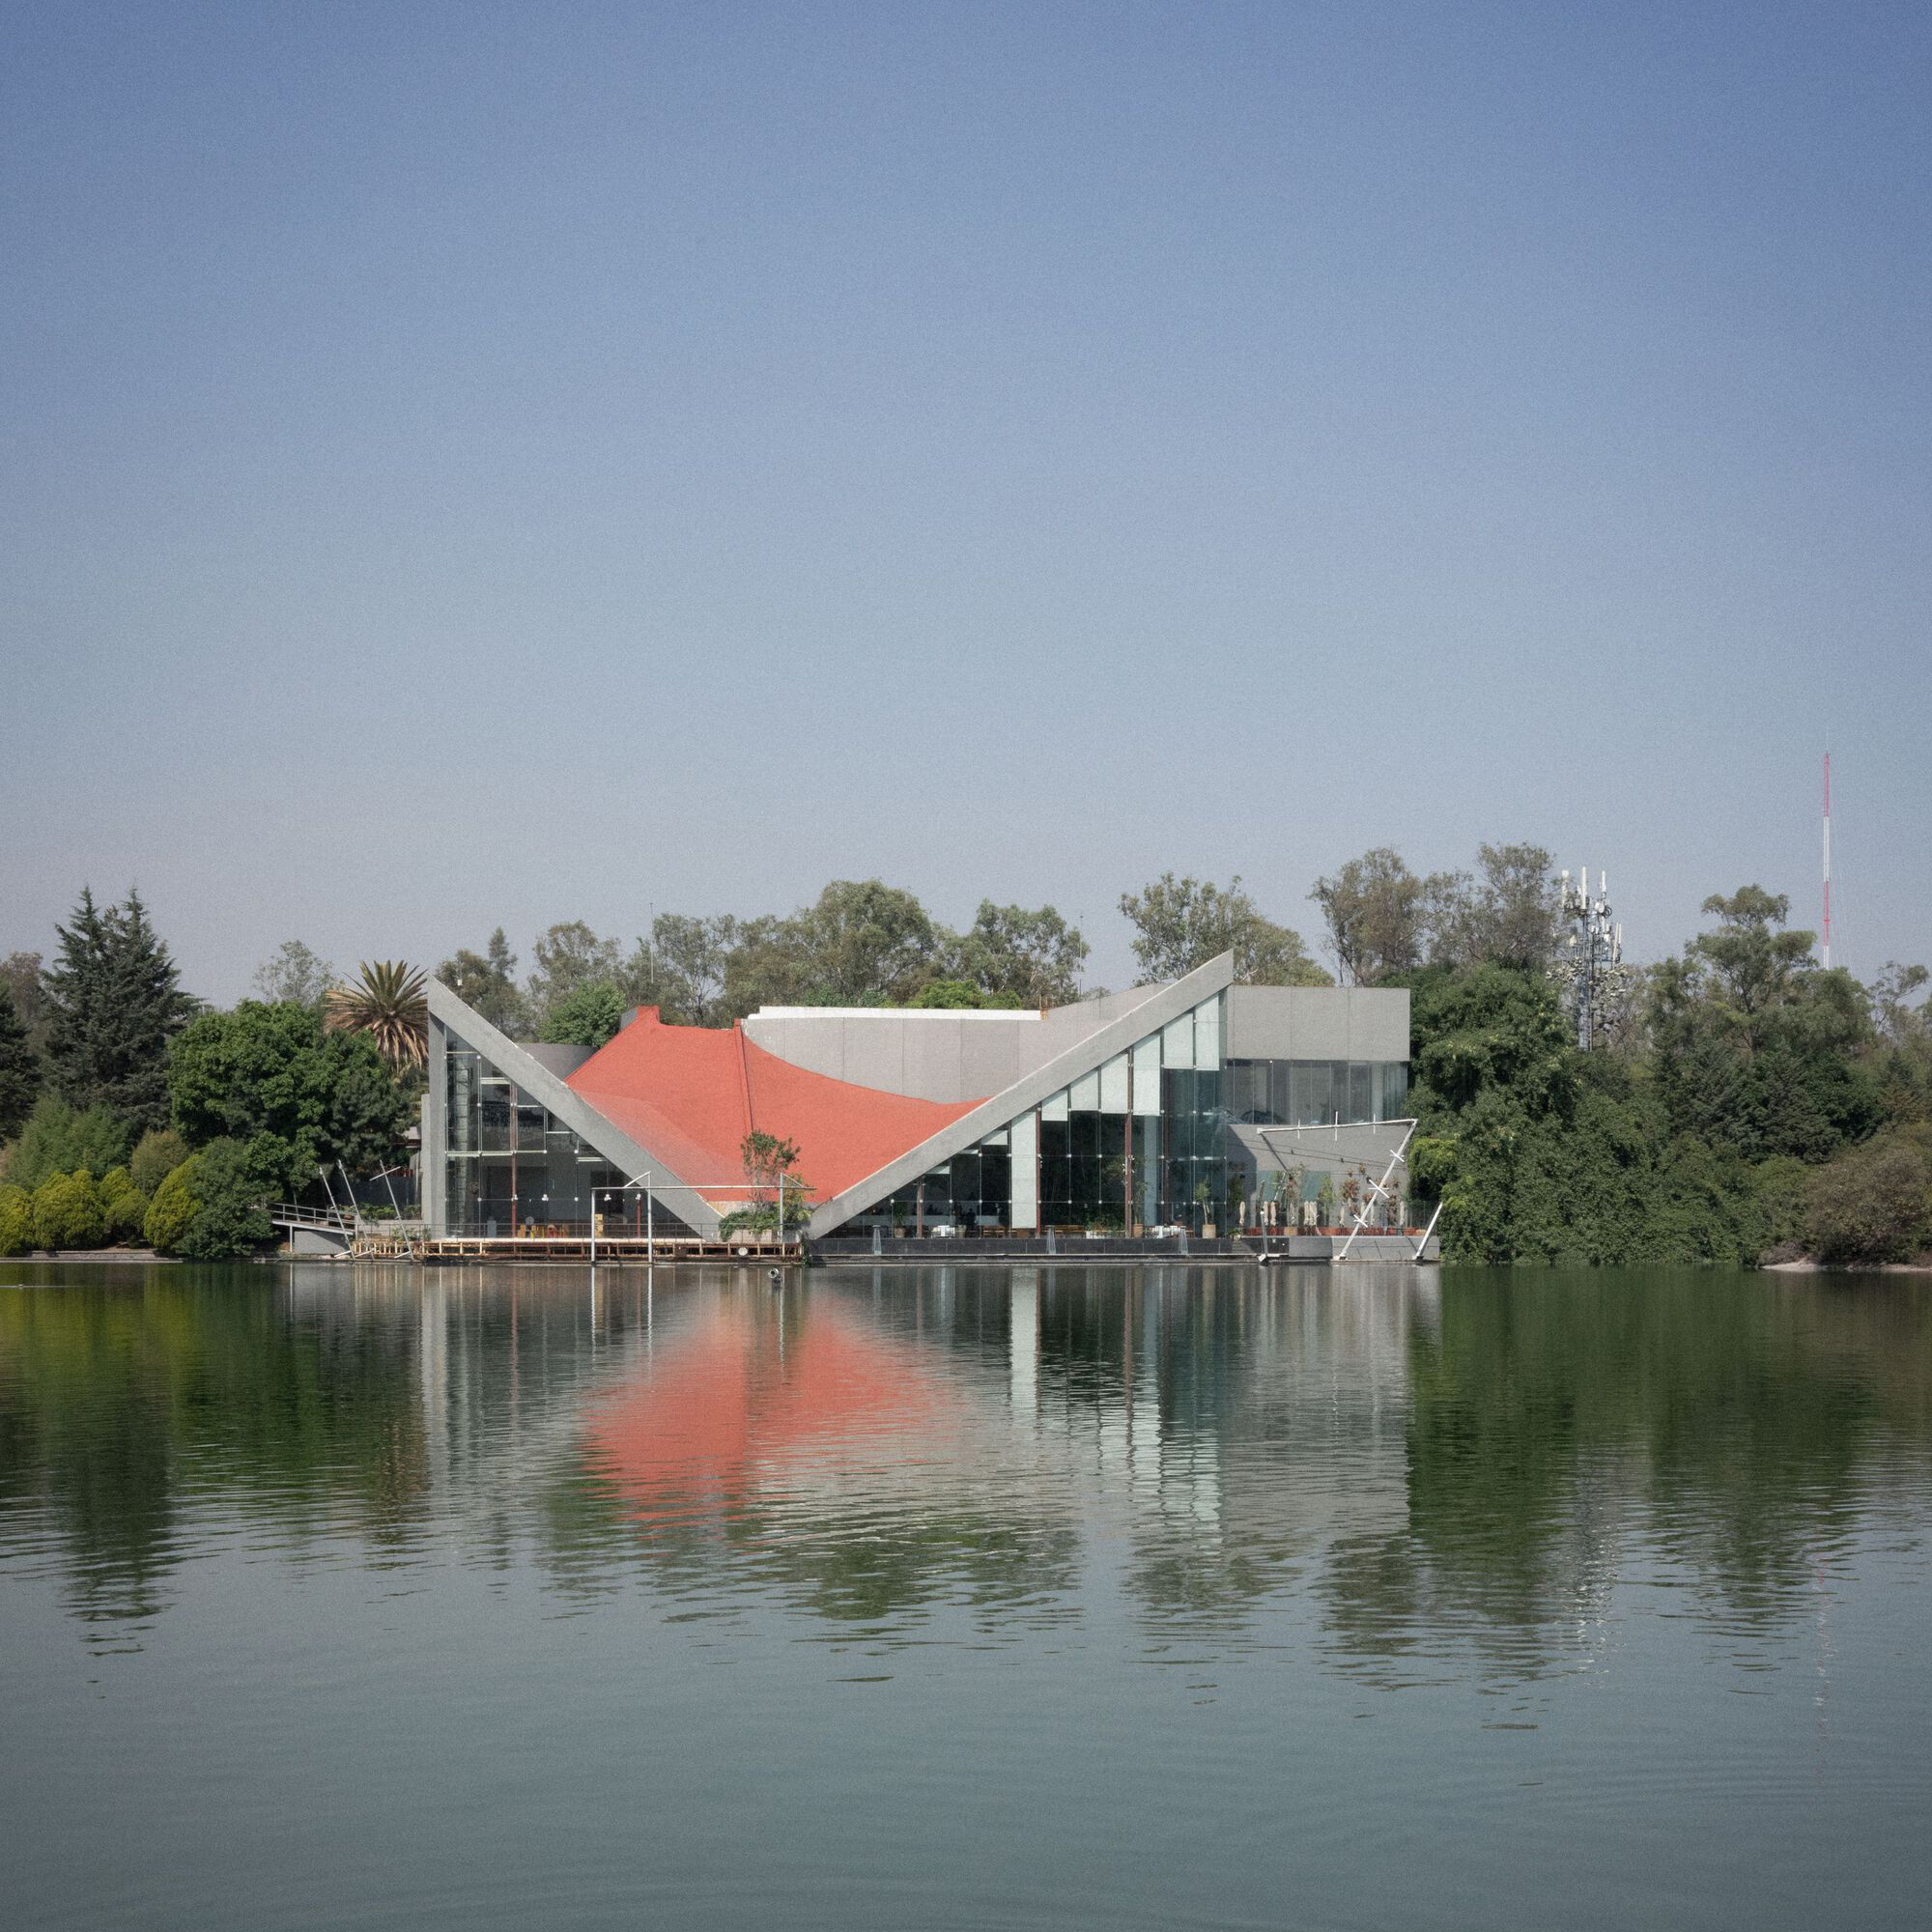 Retaining Lago Algo's Original Structure with Interventions into Its Interior Design